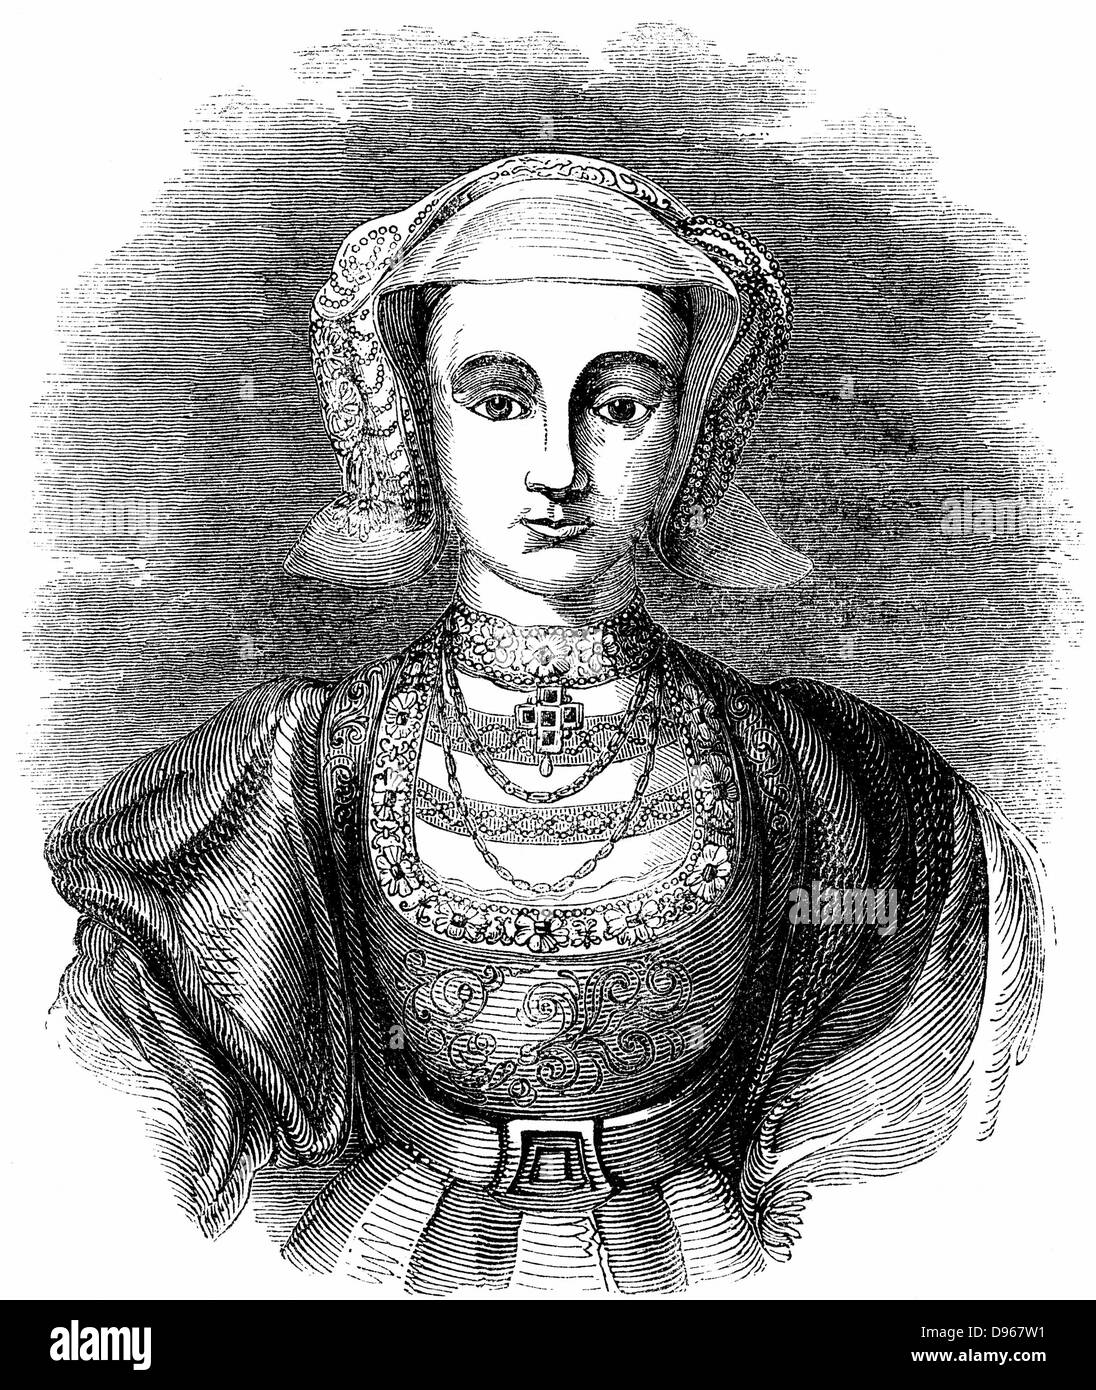 Anne de Cleeves (1515-1557) princesse allemande protestante, quatrième épouse d'Henry VIII d'Angleterre, qui l'épousa pour des raisons politiques mais a trouvé sa peu intéressant. Mariage annulé après six mois. Gravure du xixe siècle. Banque D'Images